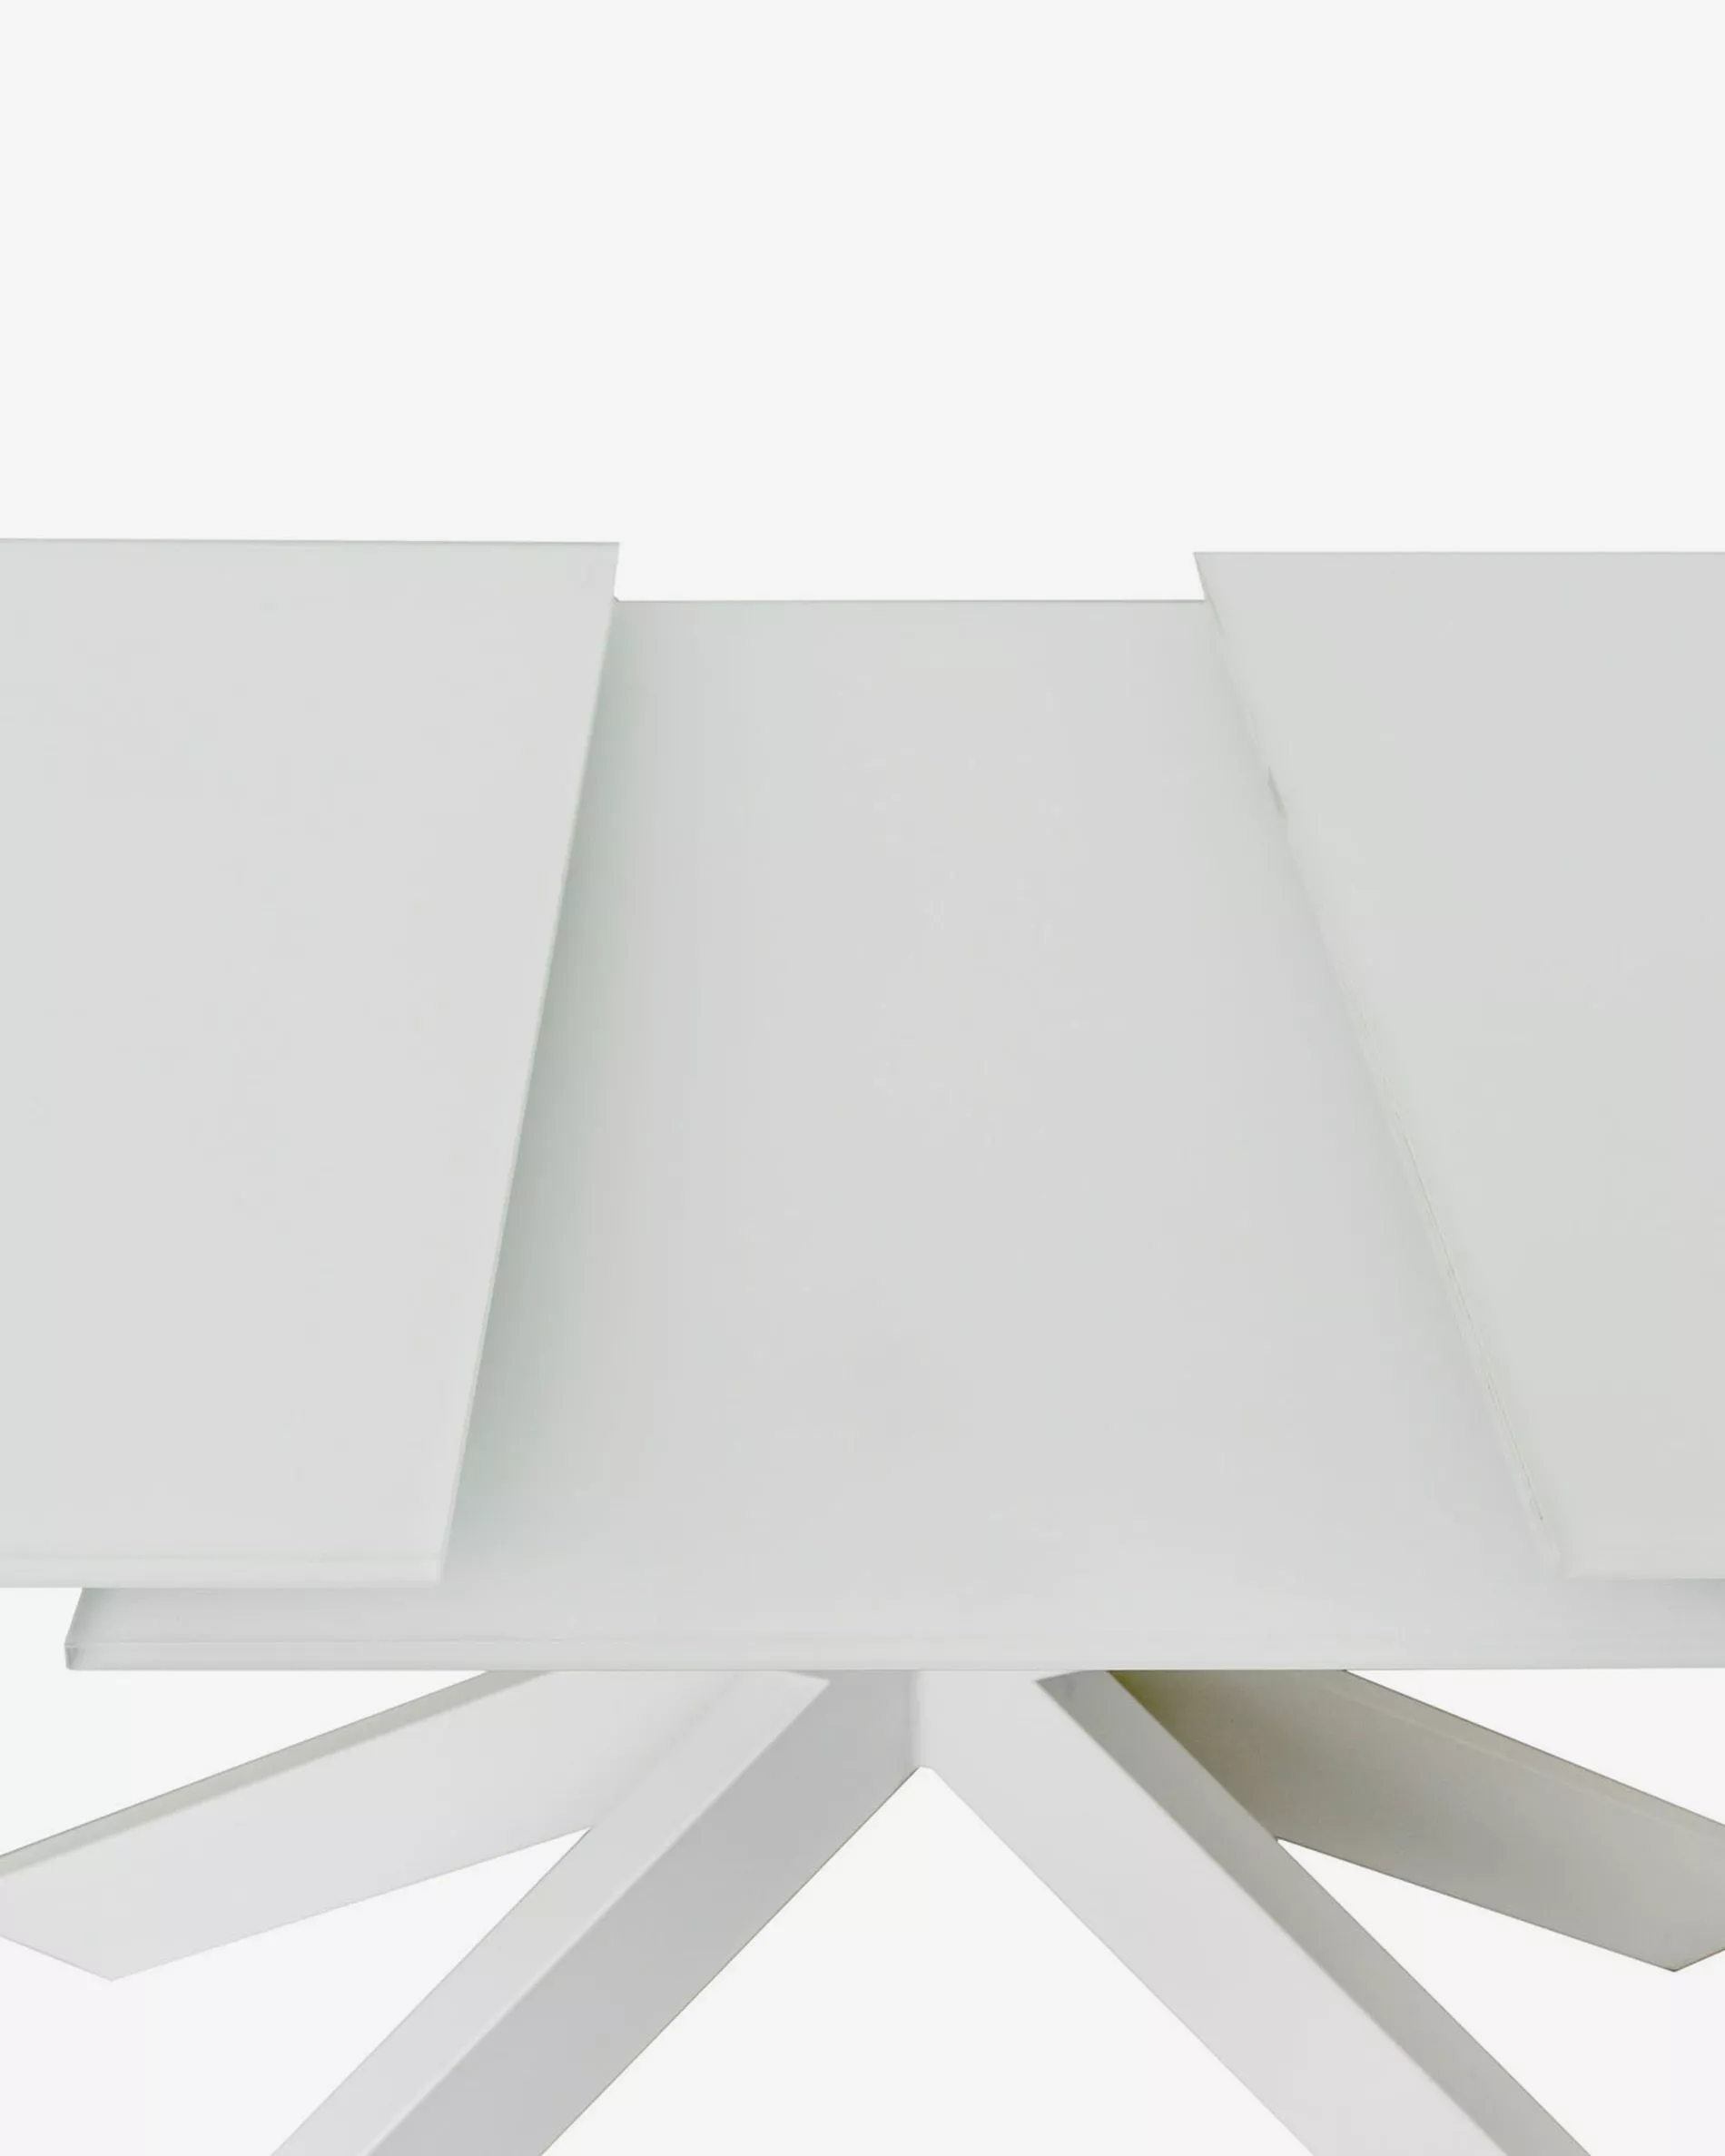 Стол обеденный La Forma Atminda 160(210)x90 стекло стальные ножки белого цвета